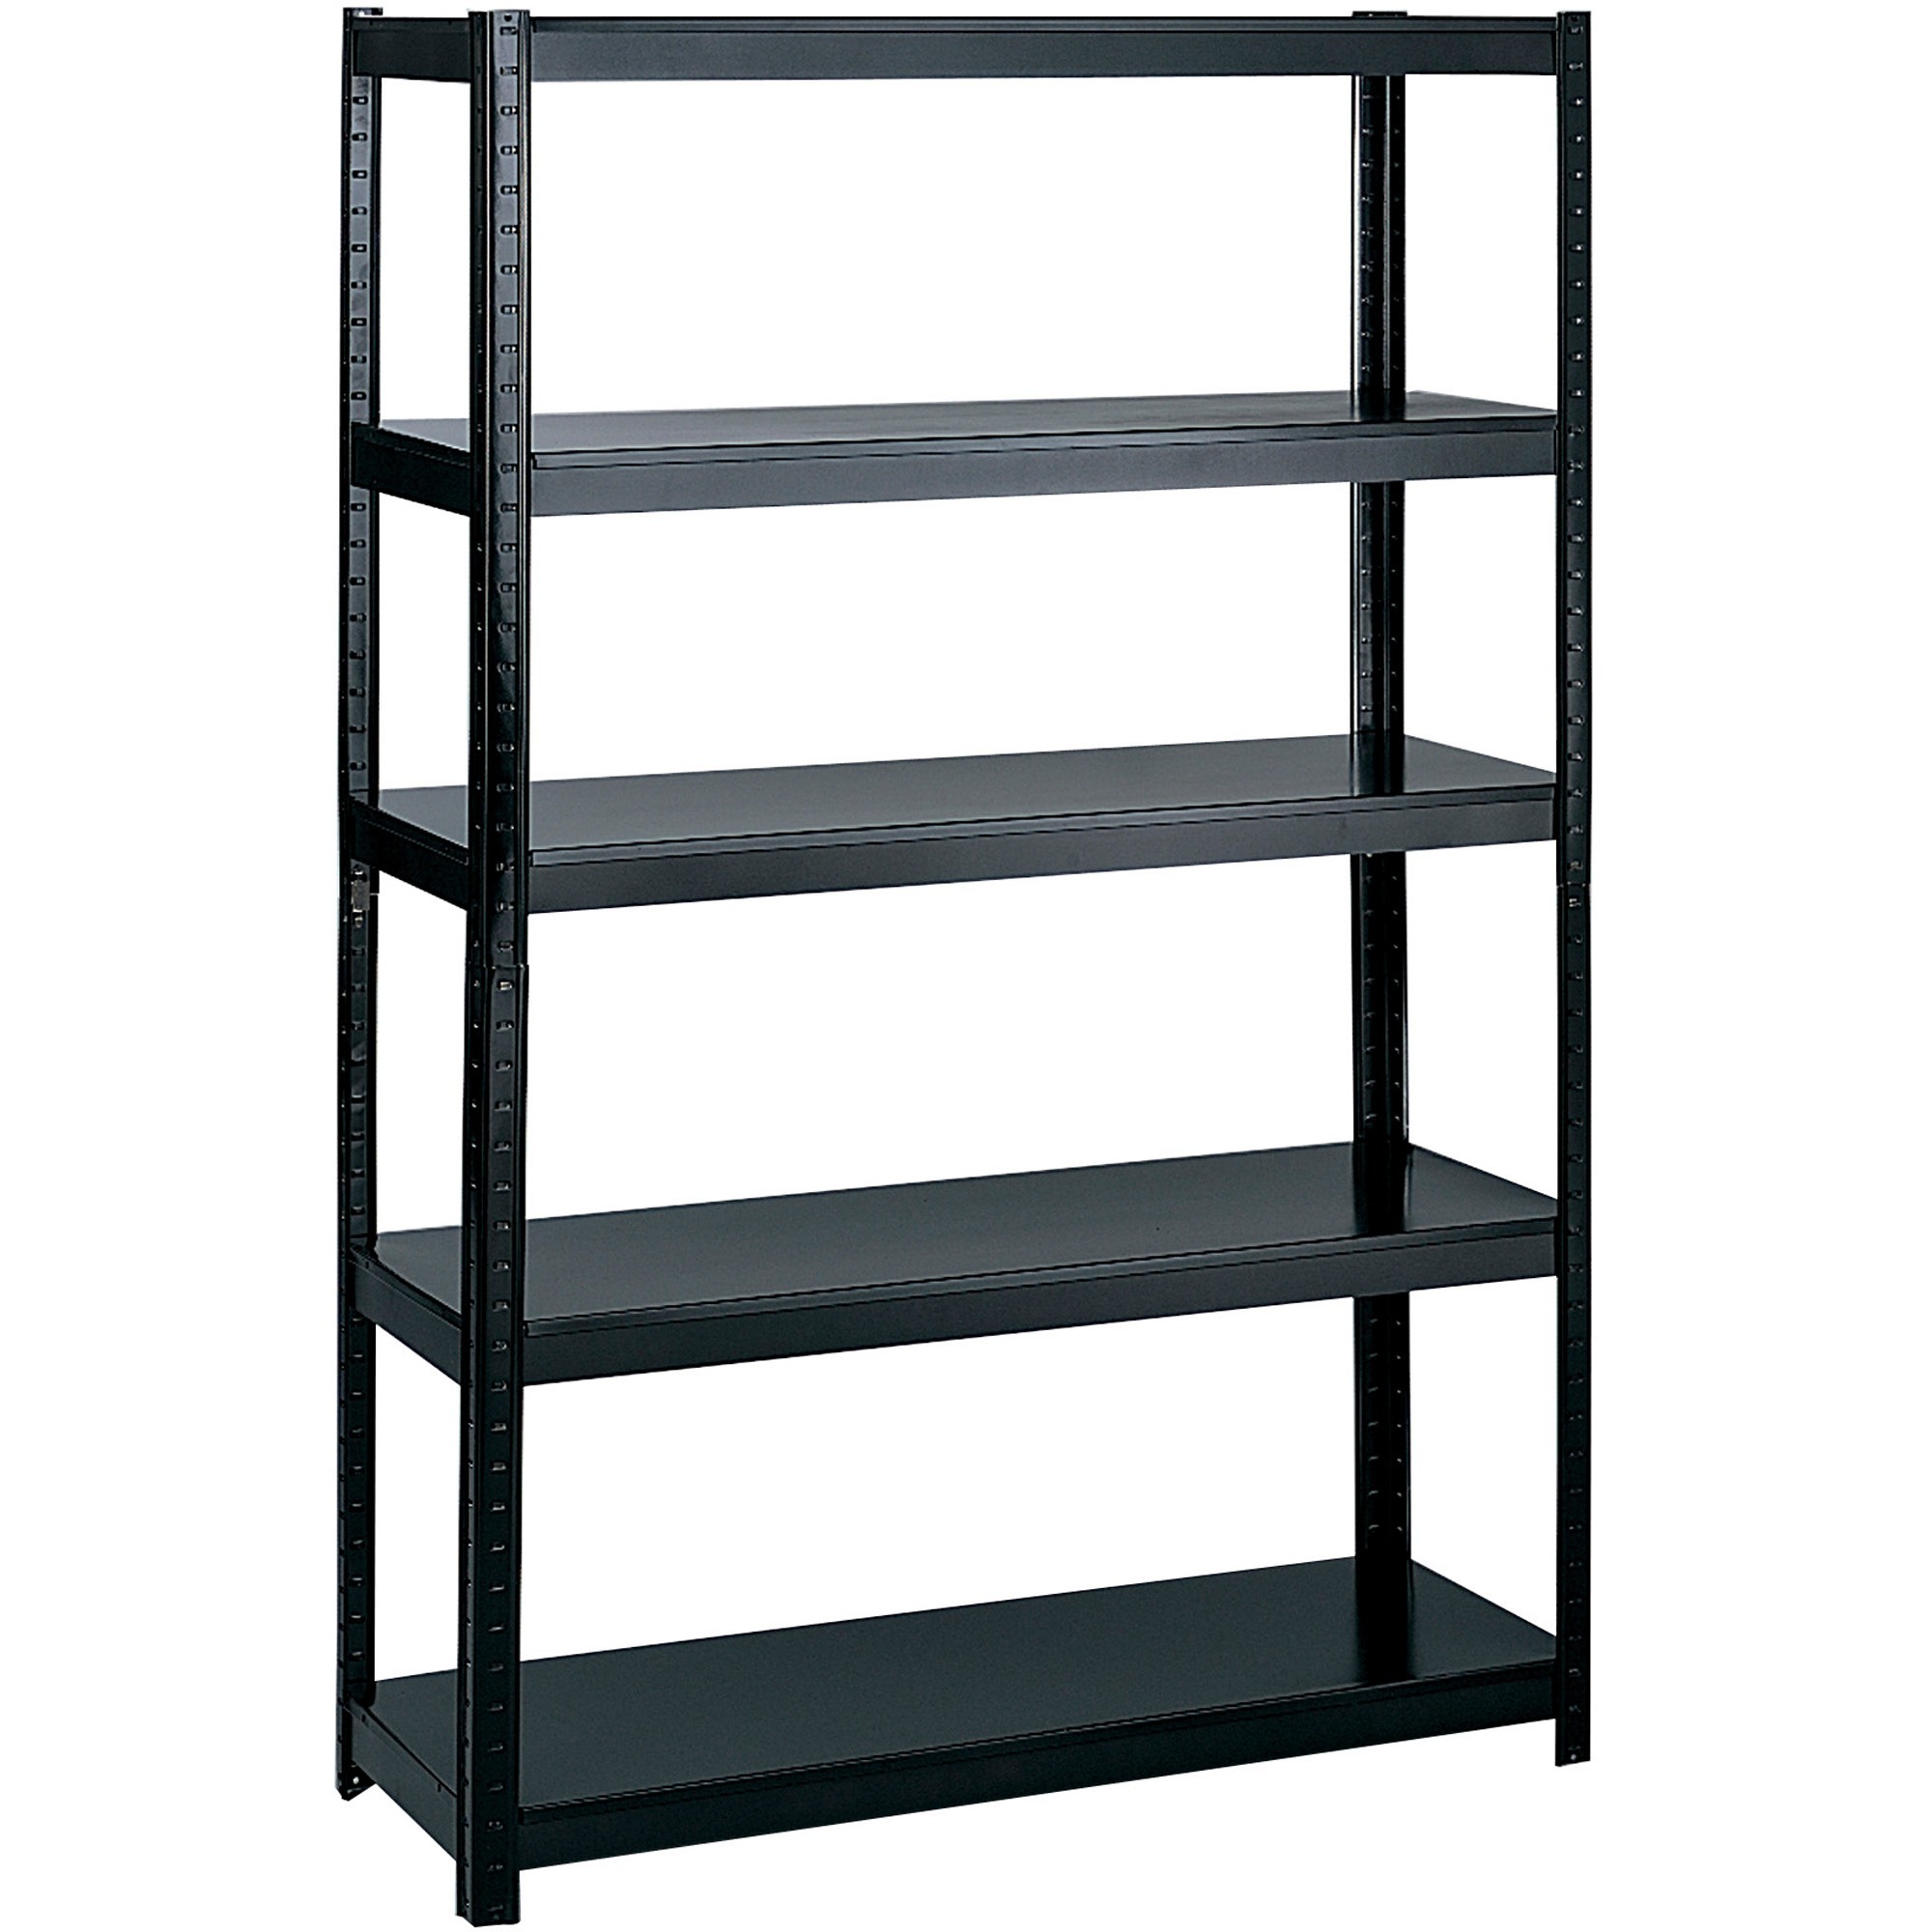 metal shelf rack